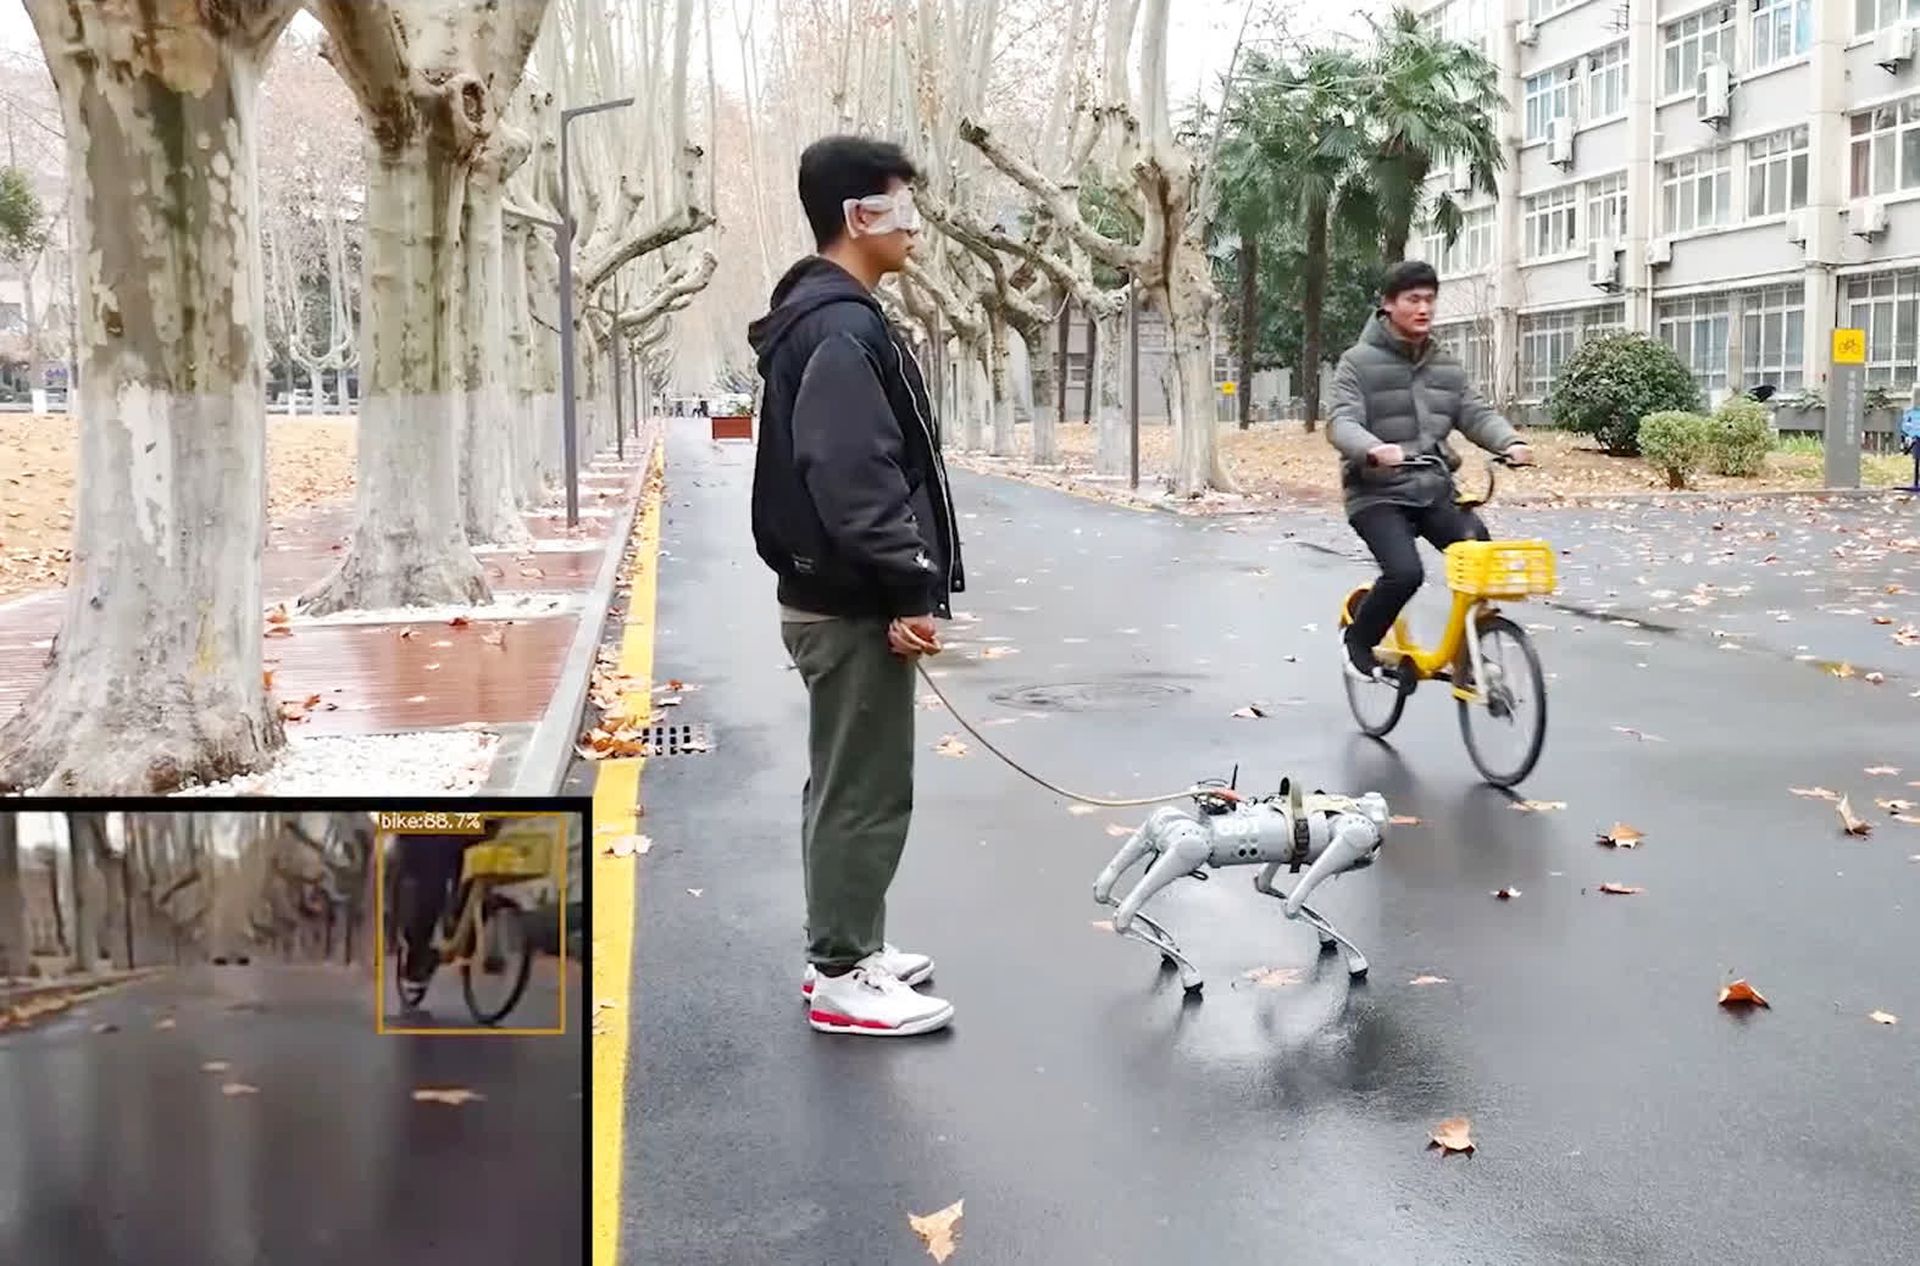 Роботы скоро могут появиться на улицах в милой манере